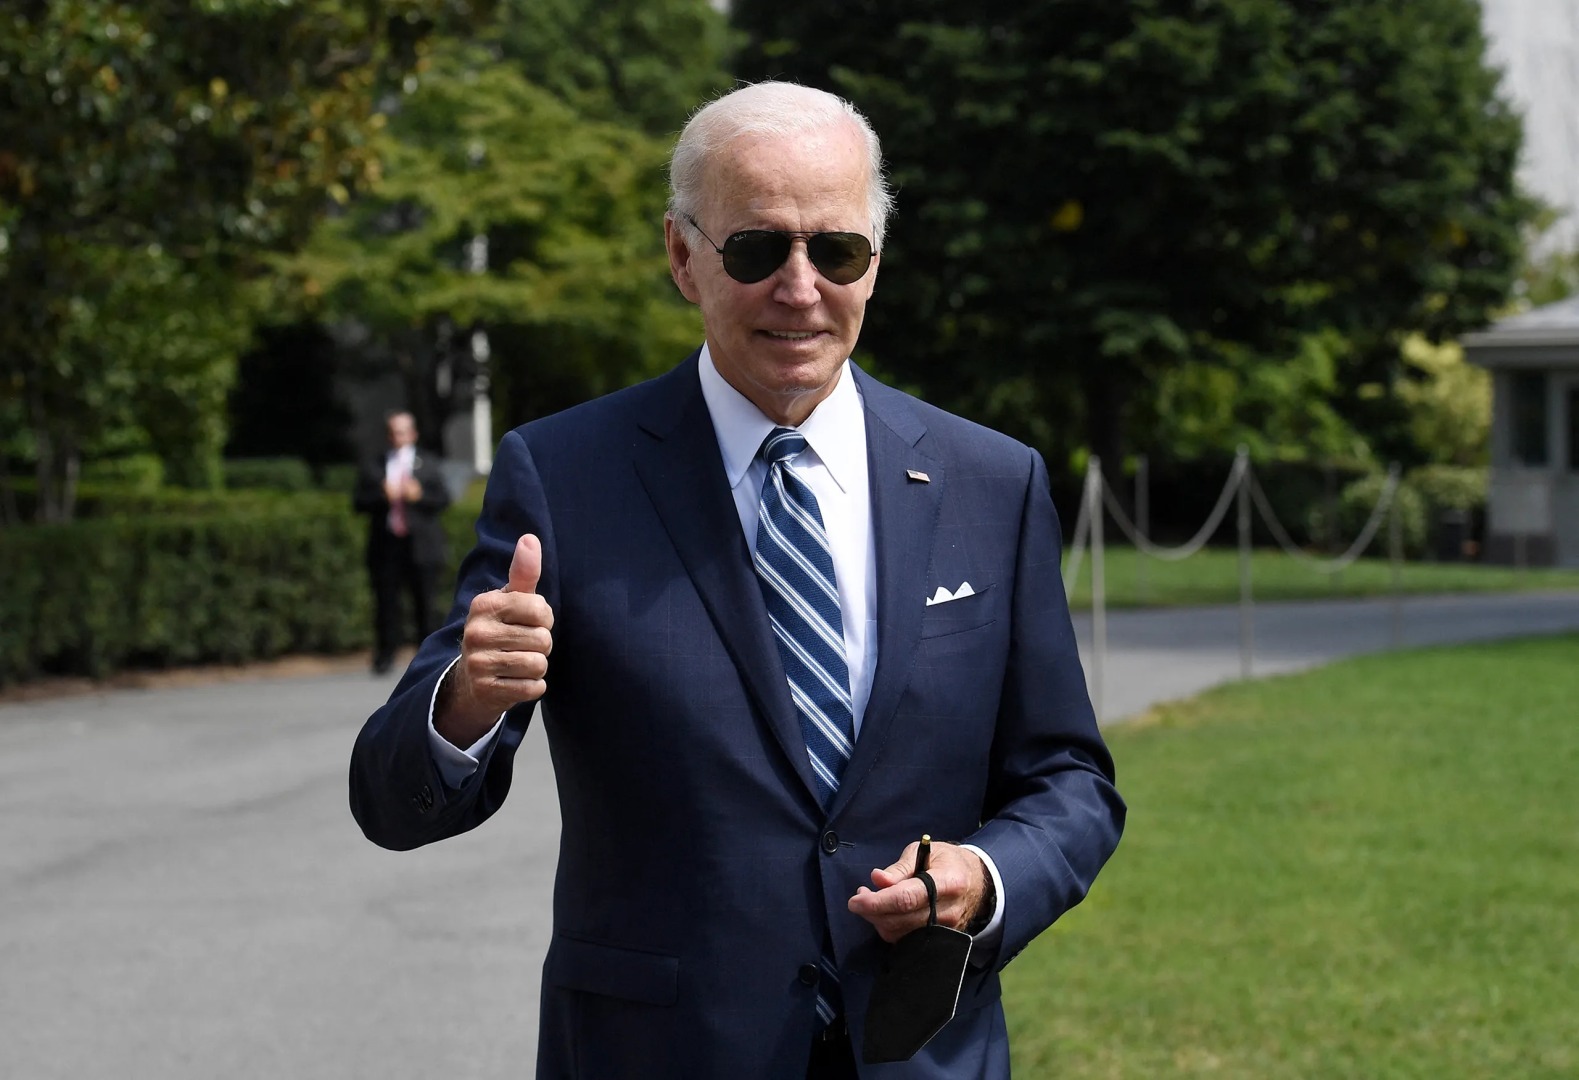 Joe Biden Warns That Democracy is Under Attack